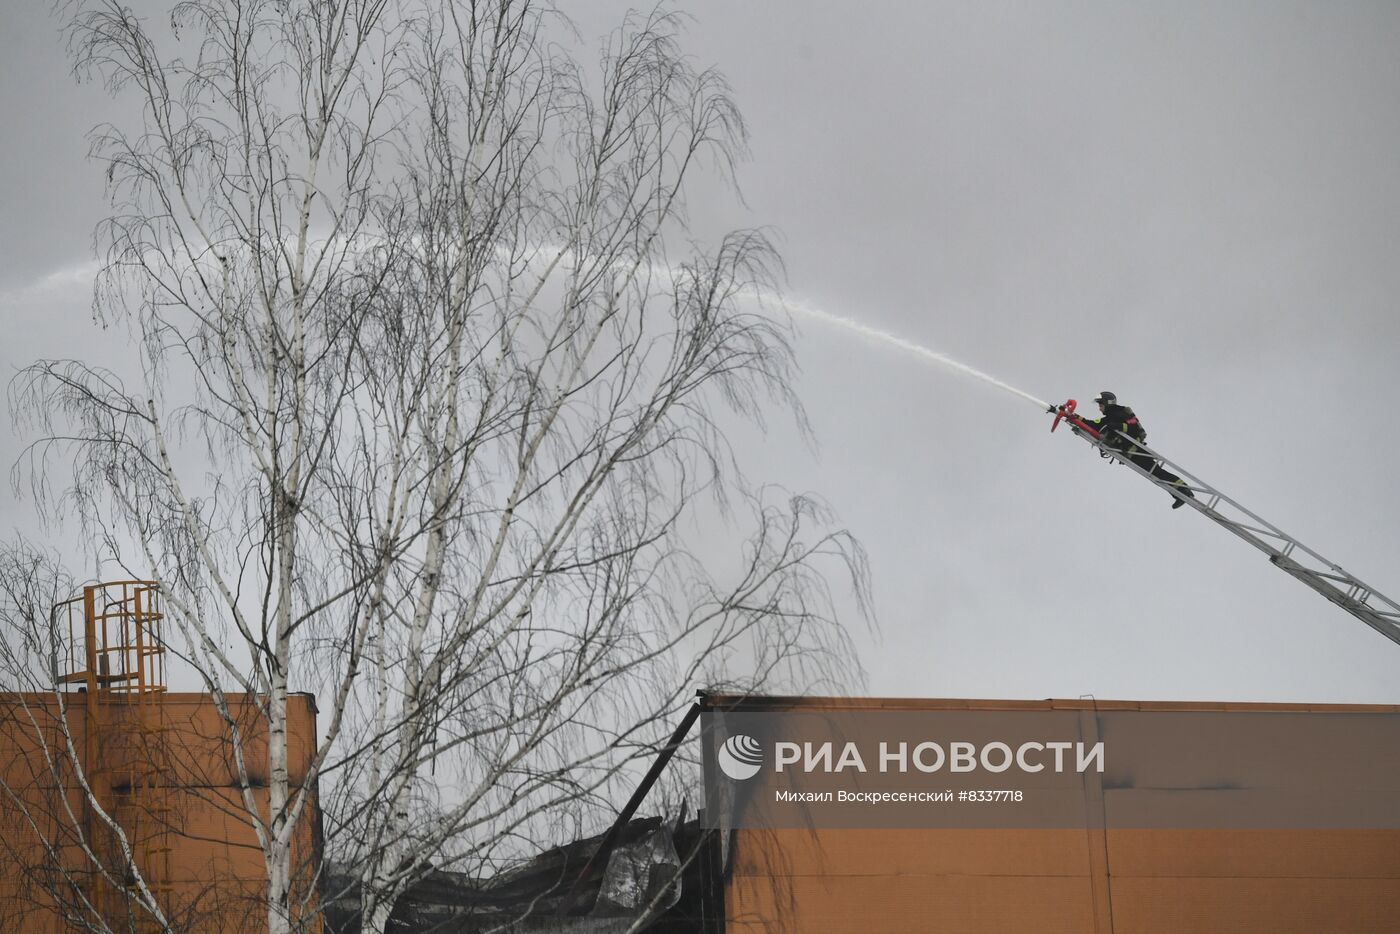 Пожар в ТЦ "Стройпарк" в Балашихе 